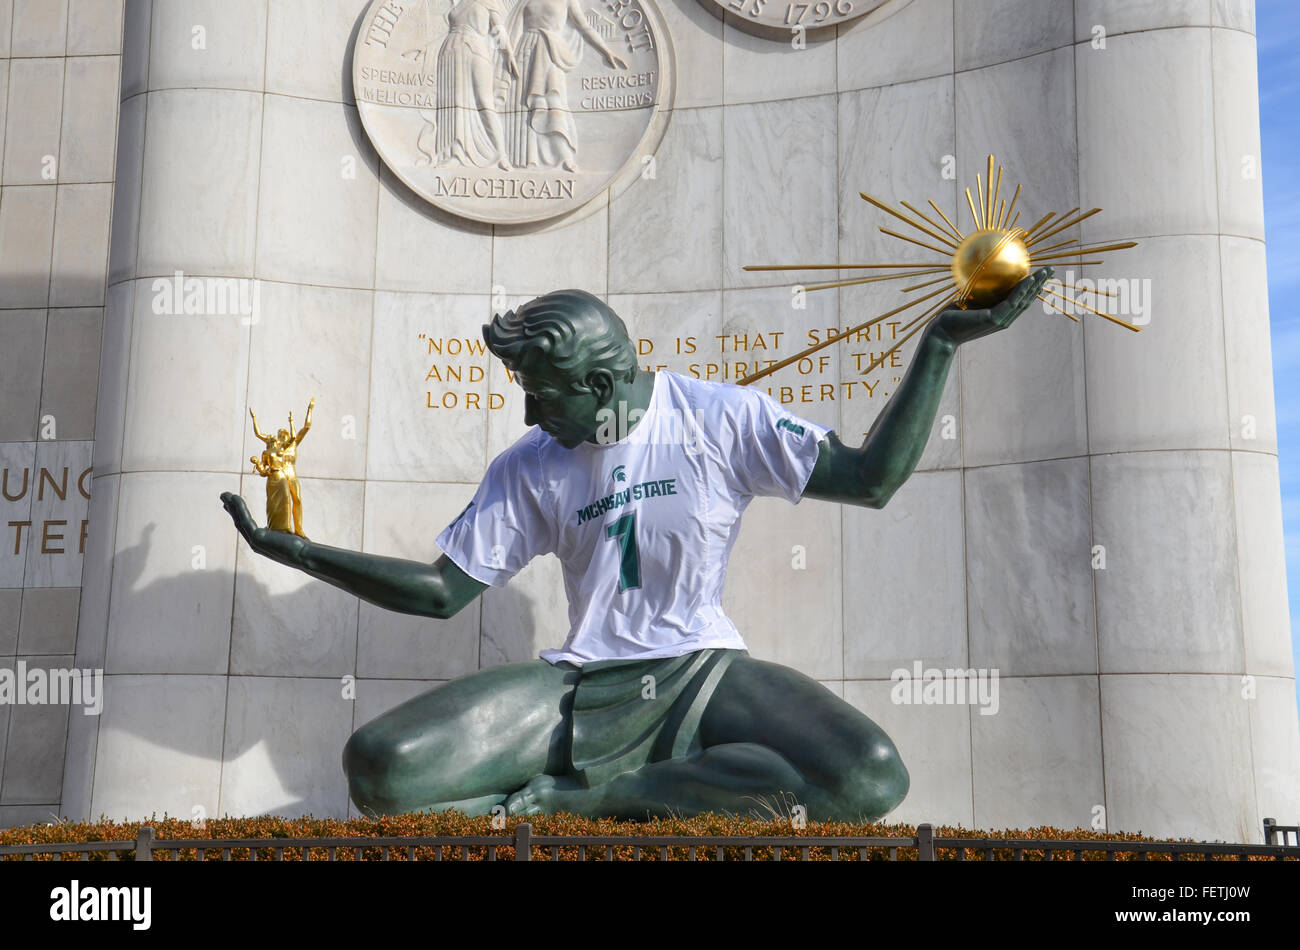 DETROIT, MI - 24 de diciembre: El espíritu de Detroit monumento en Detroit, MI, está cubierta por una camiseta de la Universidad Estatal de Michigan en DEC Foto de stock